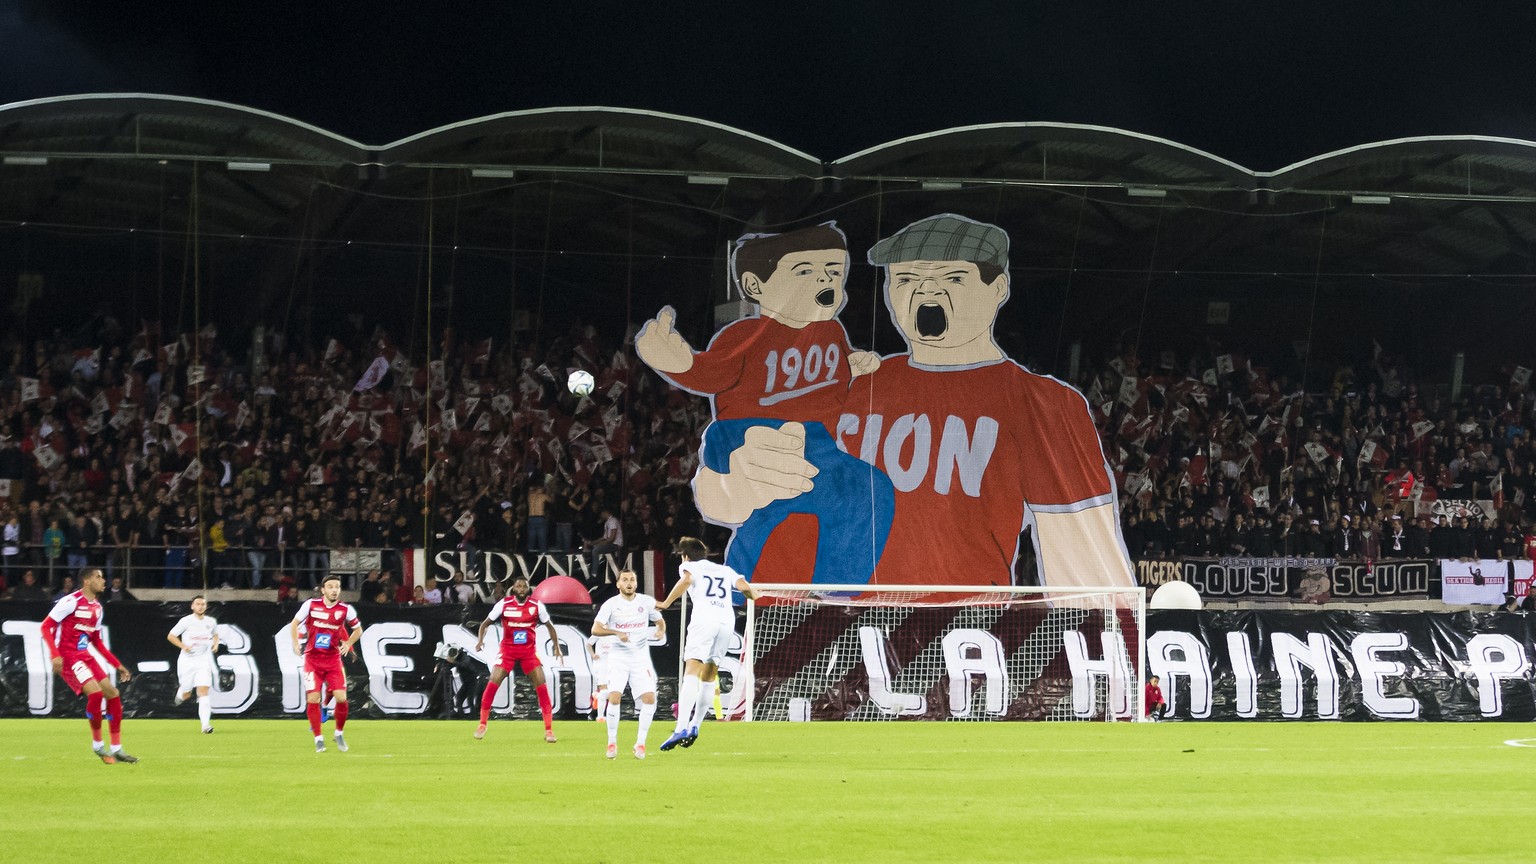 Les deux equipes en action, lors de la rencontre de football de Super League entre le FC Sion et le Servette FC le samedi 26 octobre 2019 au stade de Tourbillon a Sion. (KEYSTONE/Jean-Christophe Bott)